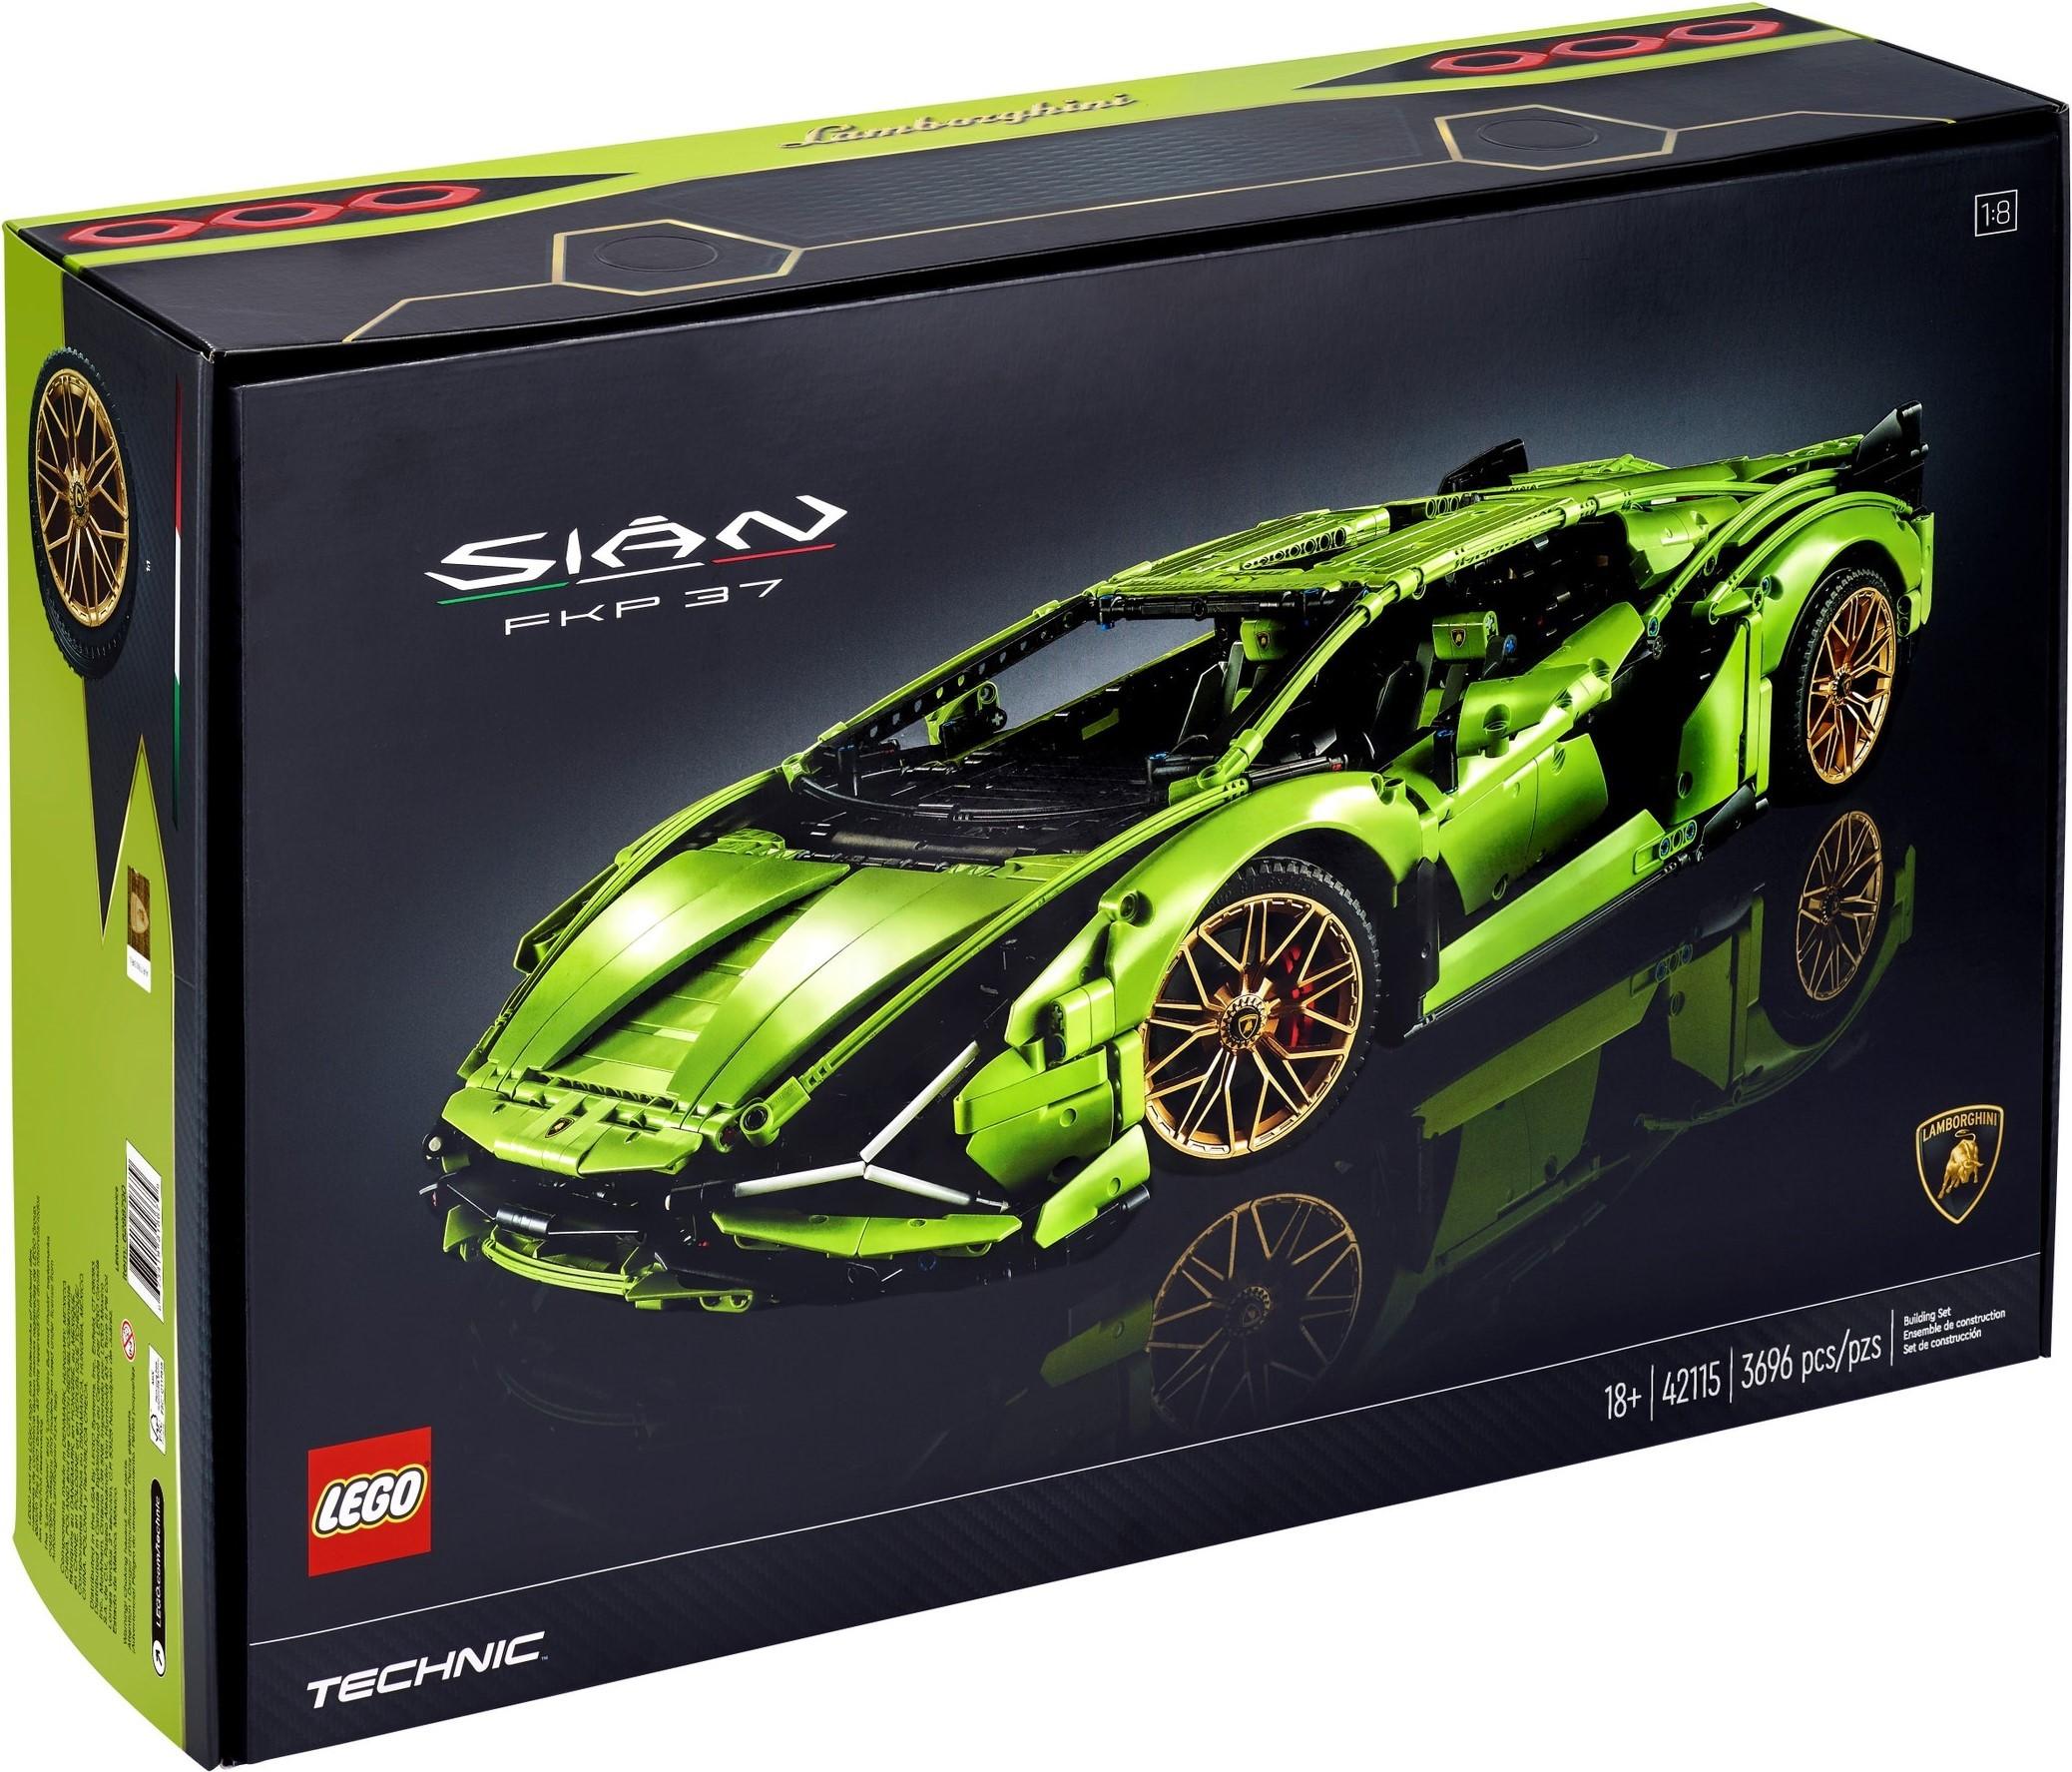 LEGO Technic Lamborghini Sian FKP 37 Car Model Building Kit 42115 for $299.99 Shipped